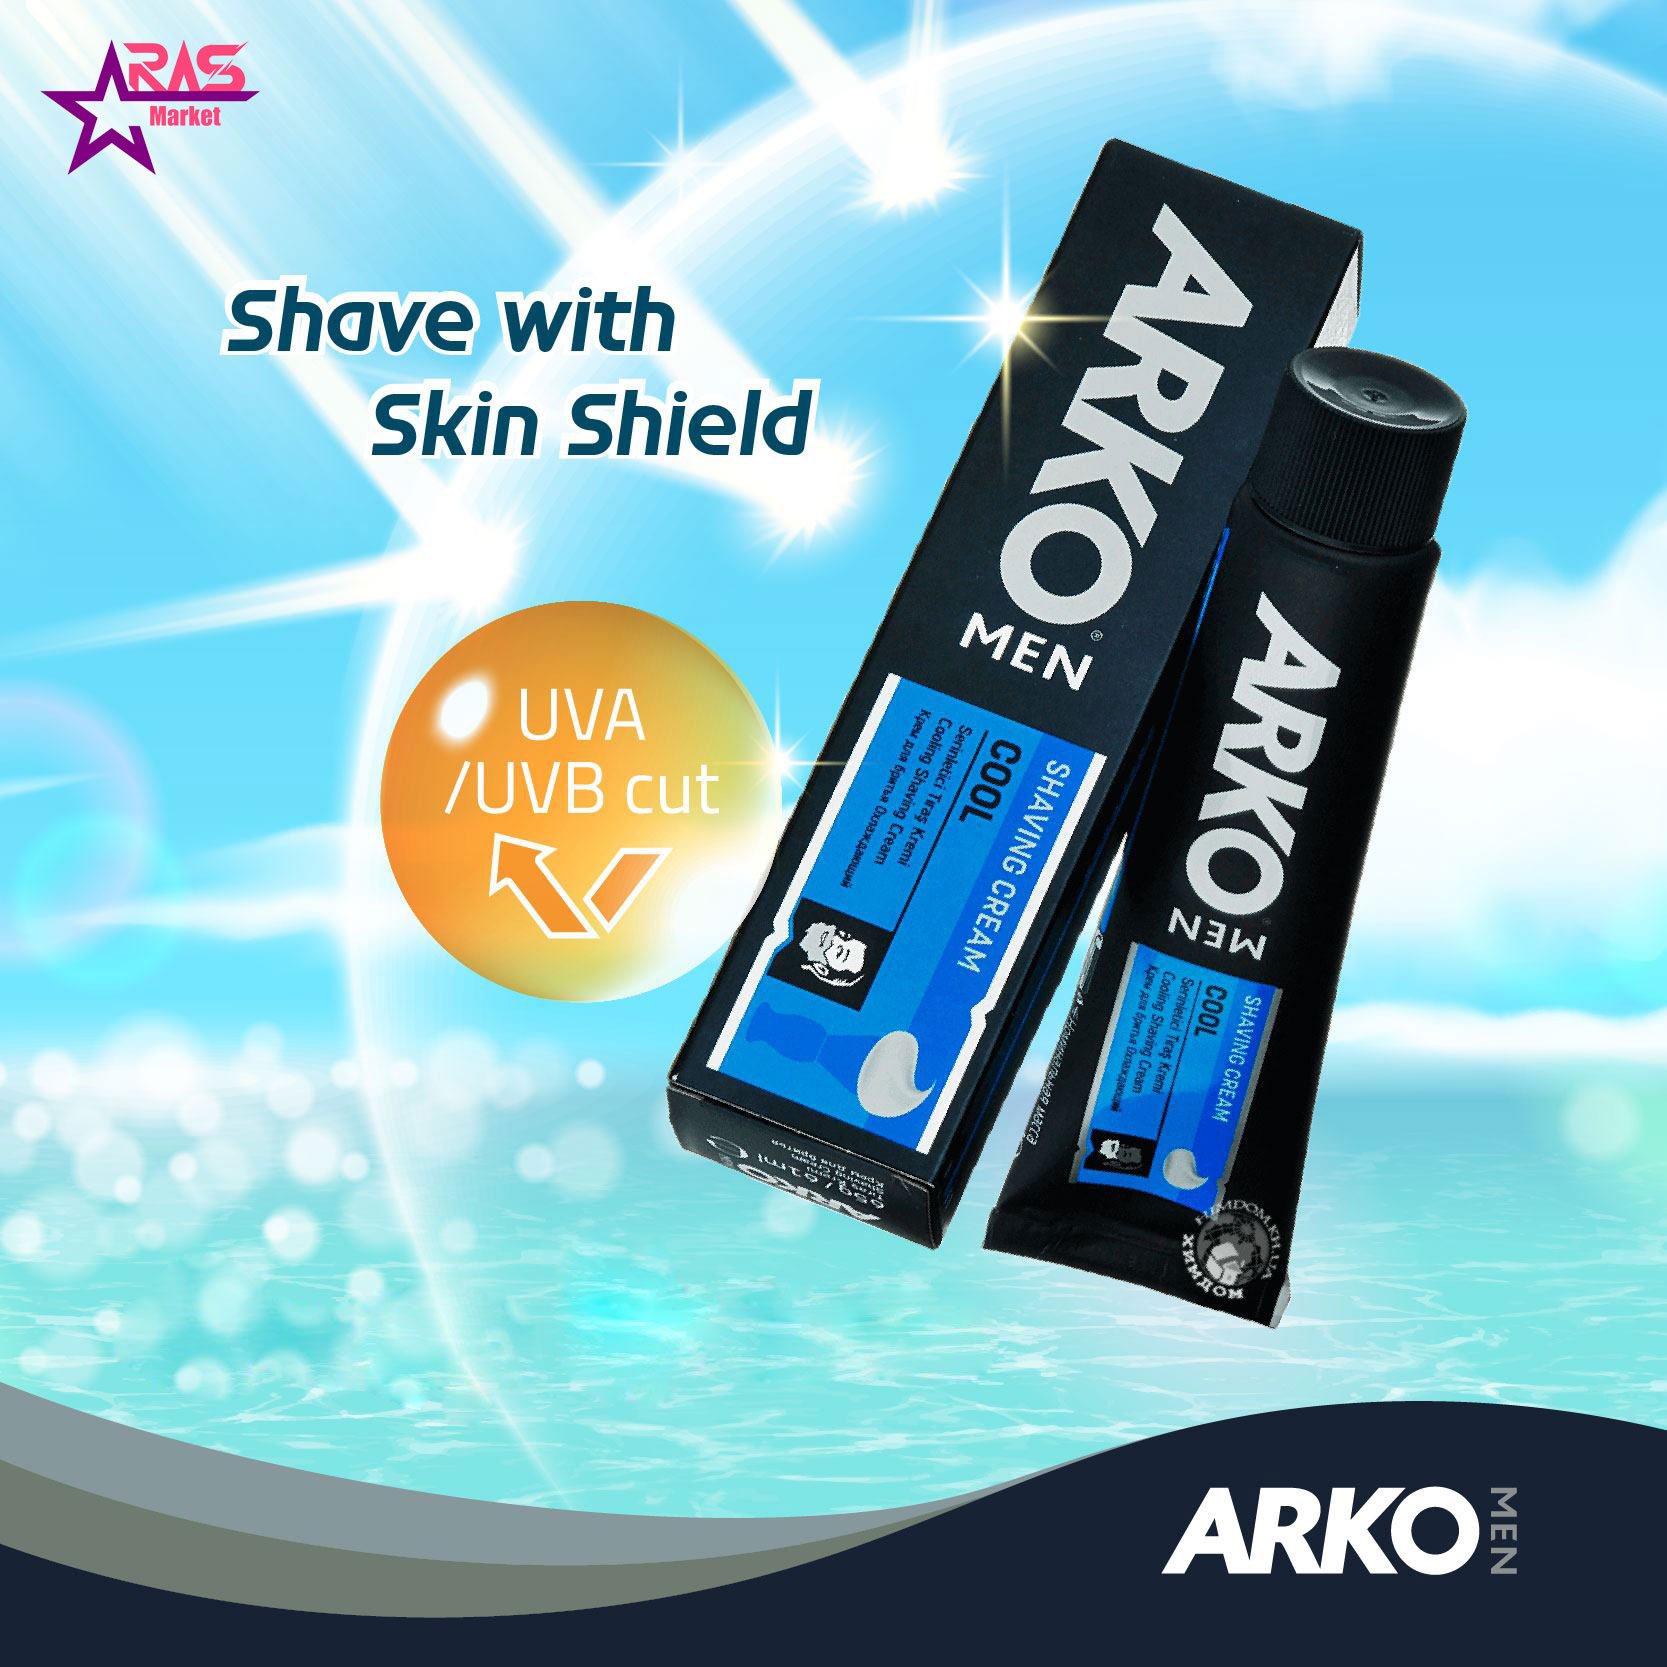 خمیر اصلاح آرکو مدل Cool خنک کننده 100 میلی لیتر ، فروشگاه اینترنتی ارس مارکت ، بهداشت آقایان ، arko shaving cream